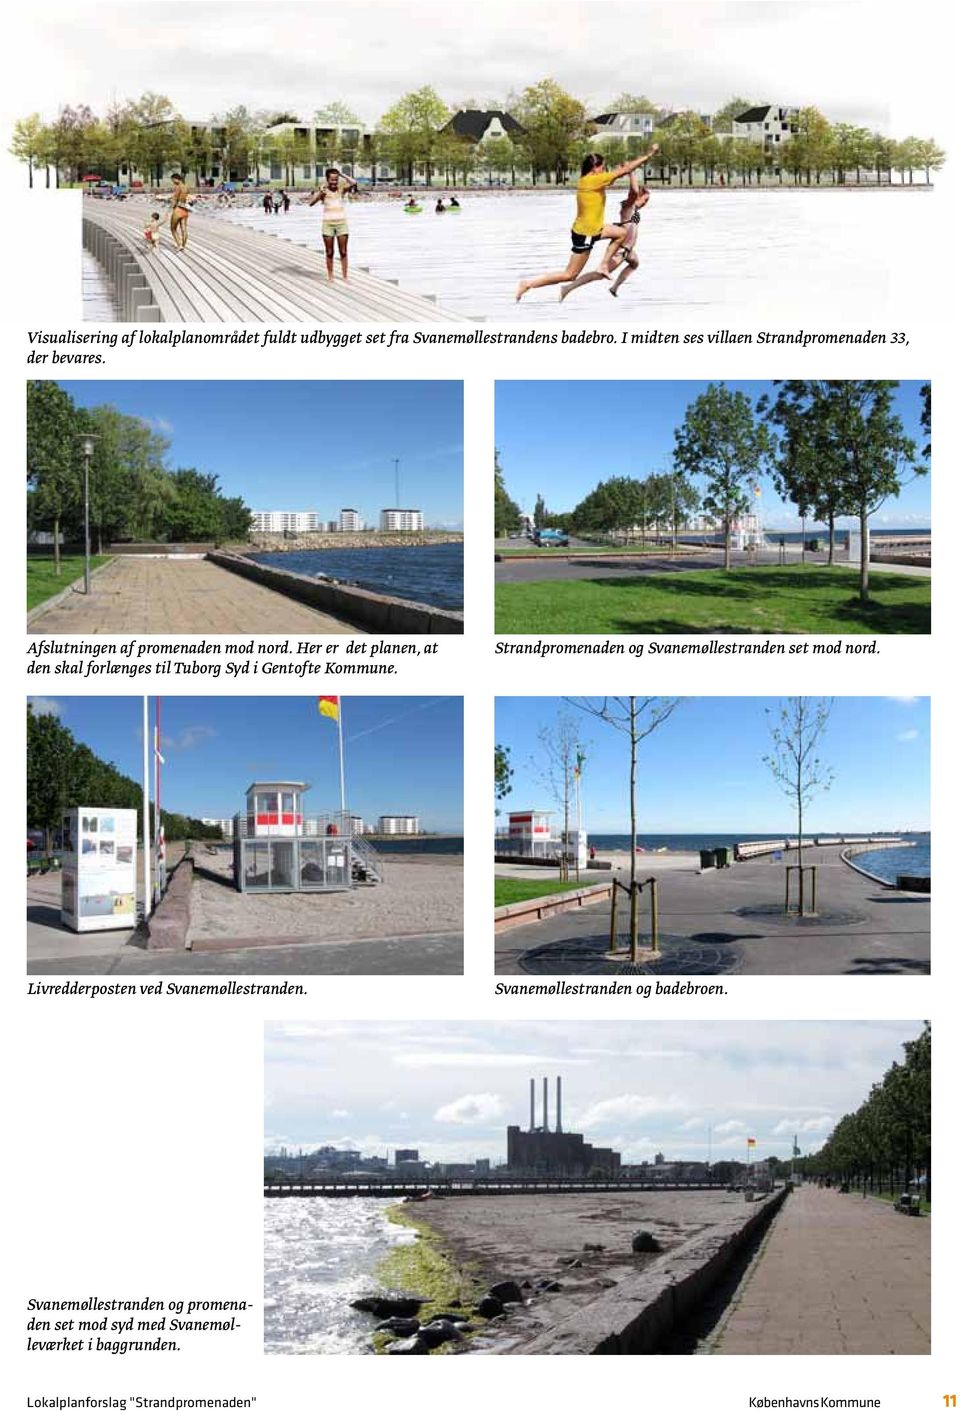 Her er det planen, at den skal forlænges til Tuborg Syd i Gentofte Kommune. Strandpromenaden og Svanemøllestranden set mod nord.